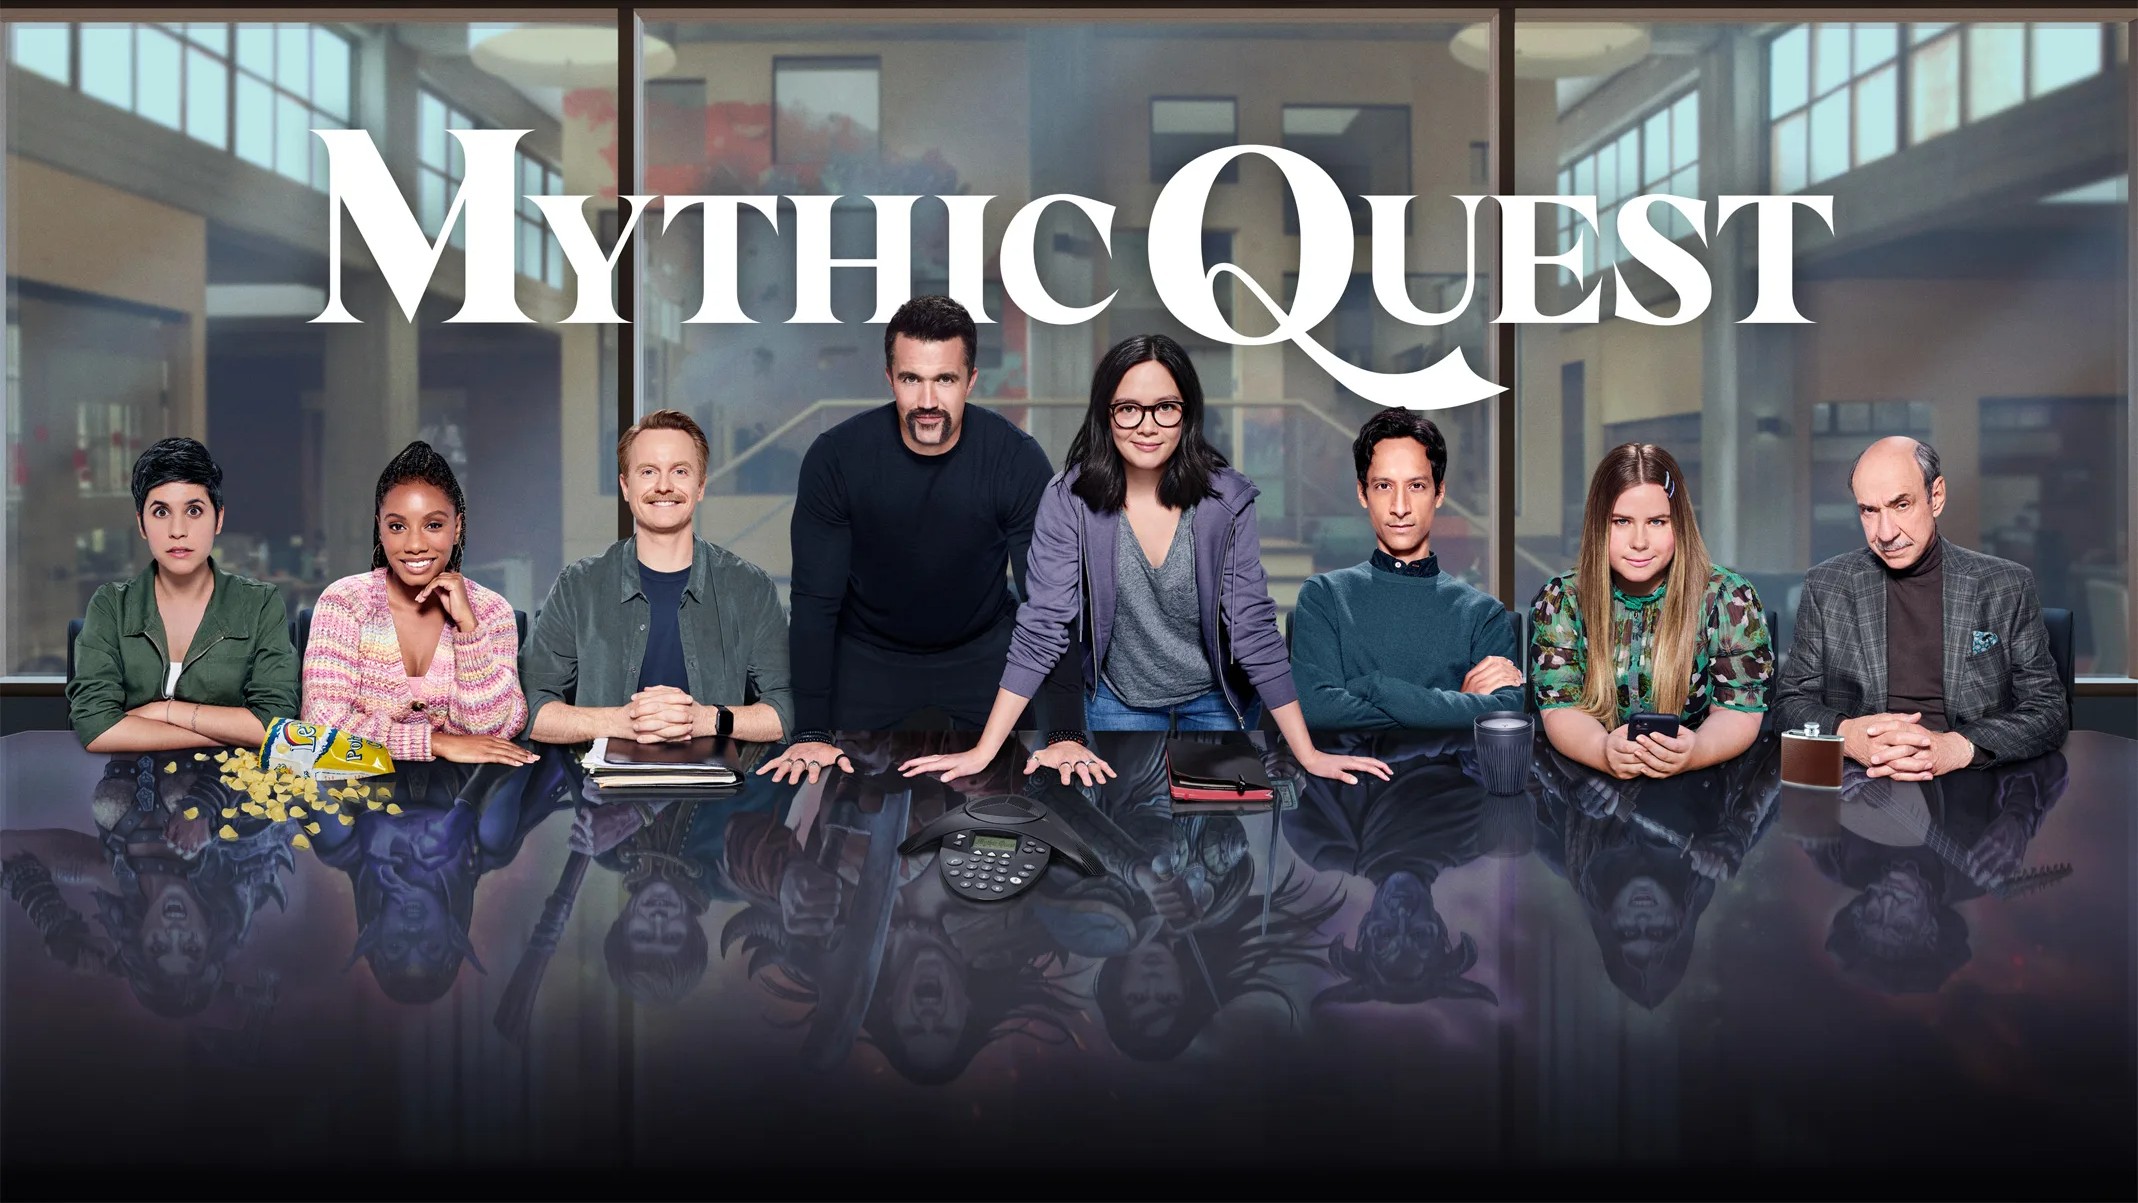 Mythic Quest season 3